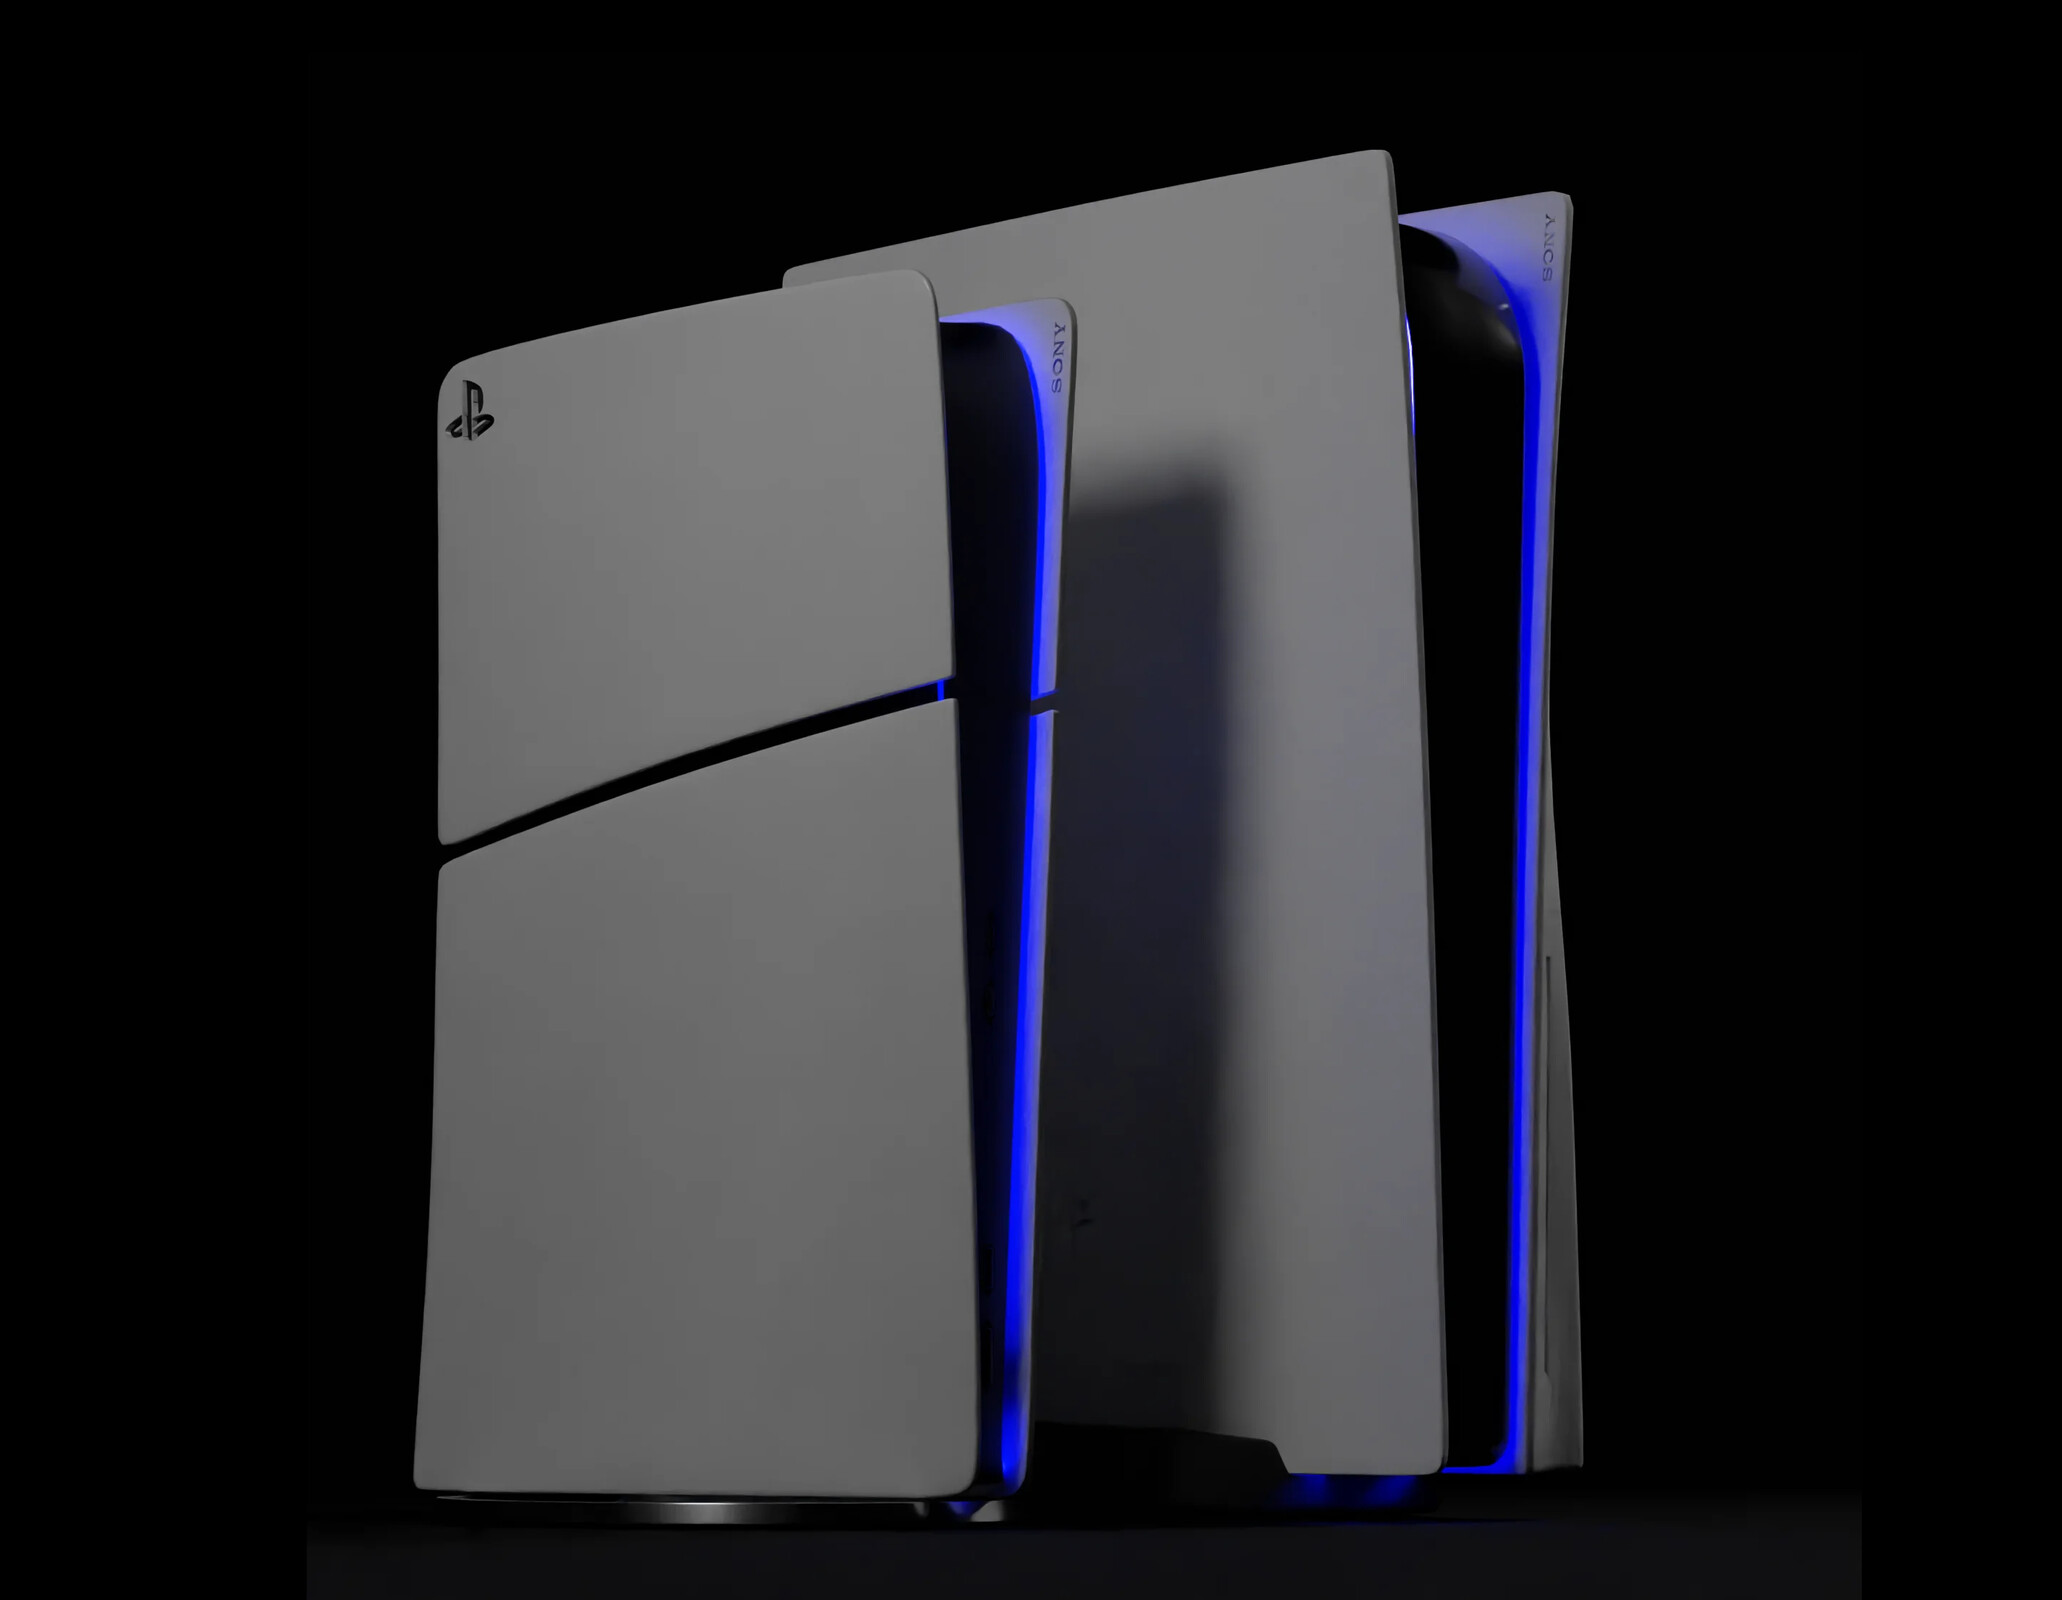 Sony PlayStation 5: la riduzione delle dimensioni tra la PS5 originale e la  nuova PS5 modulare viene mostrata in modelli 3D realizzati dai fan -   News